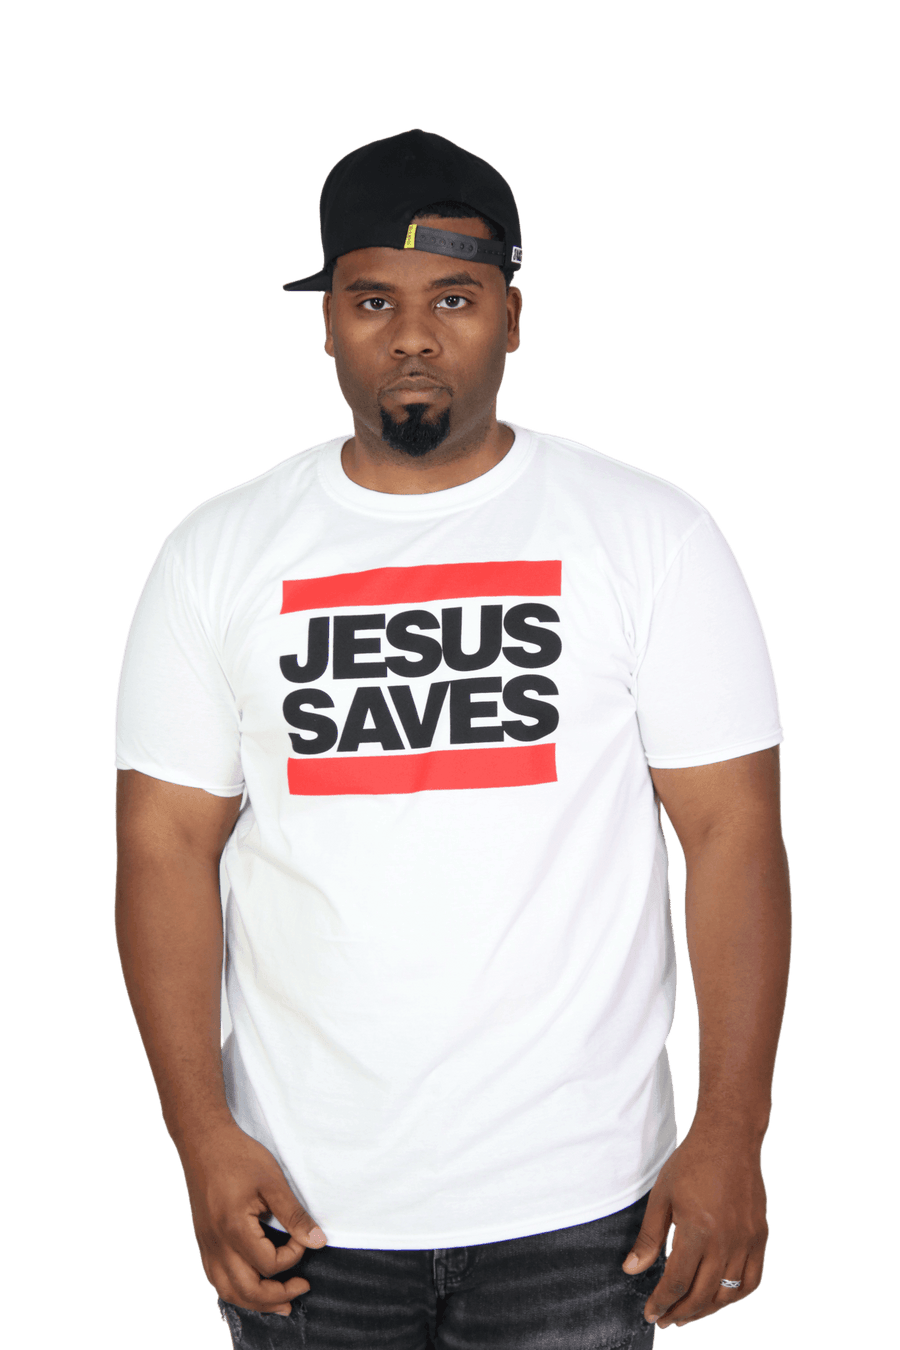 Jesus Saves Evangelism Tee